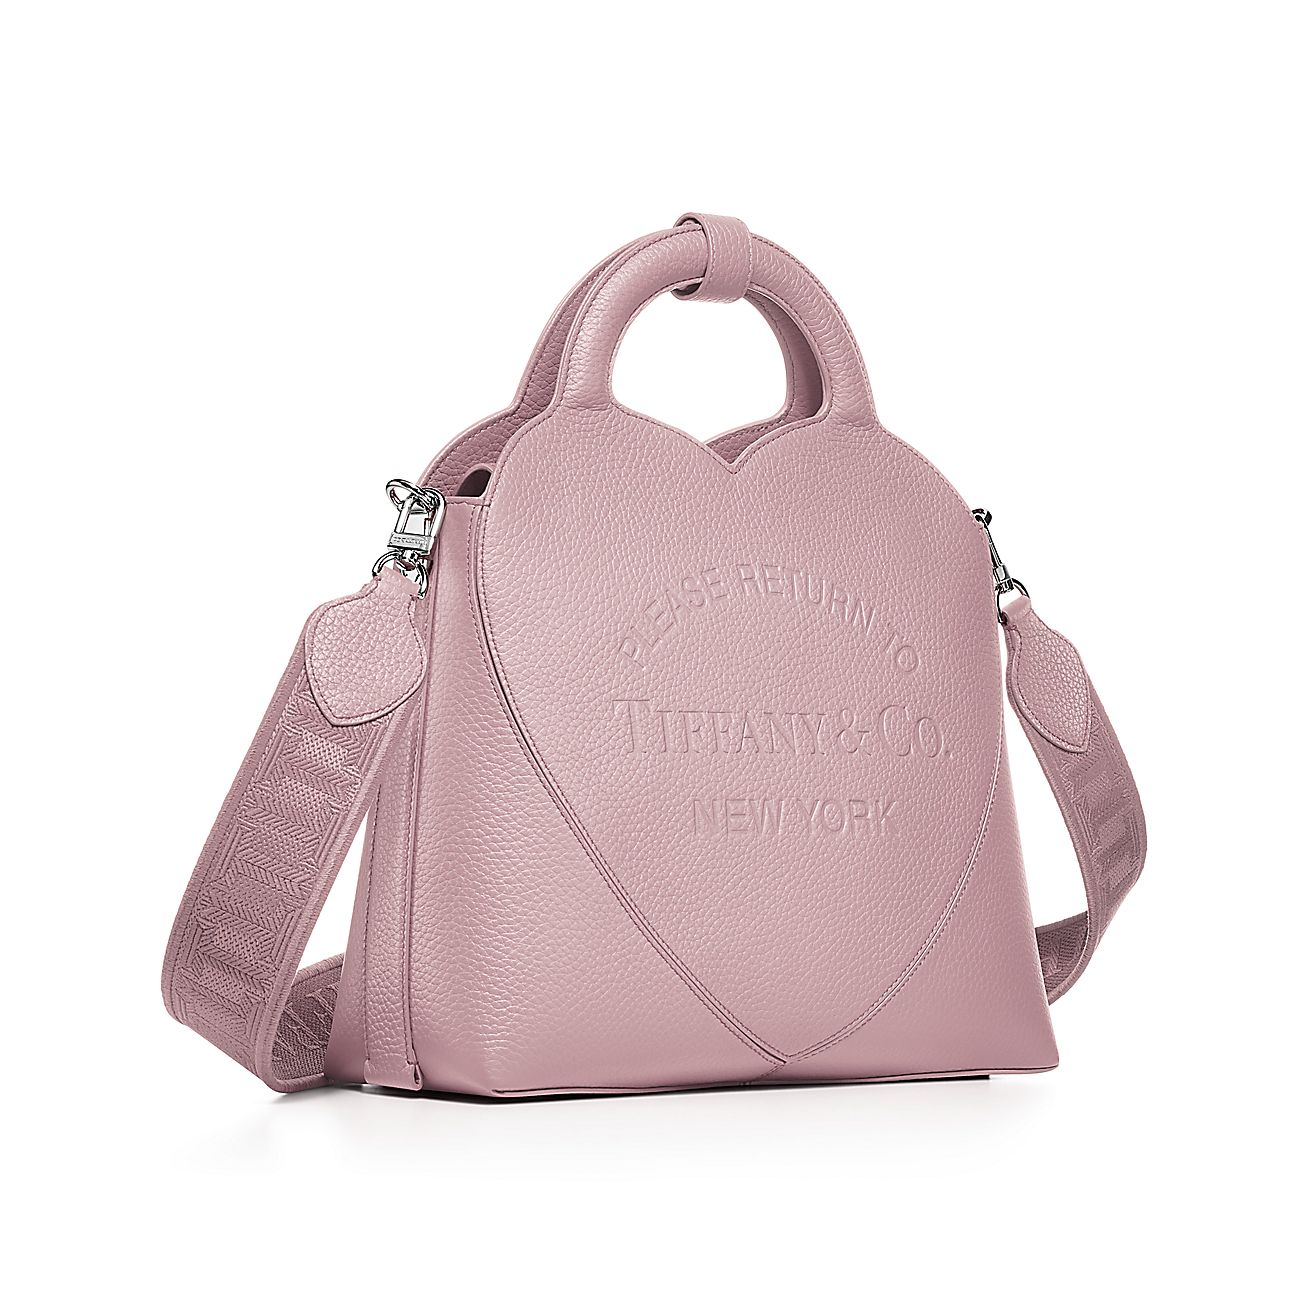 Return to Tiffany Small Charm Tote Bag